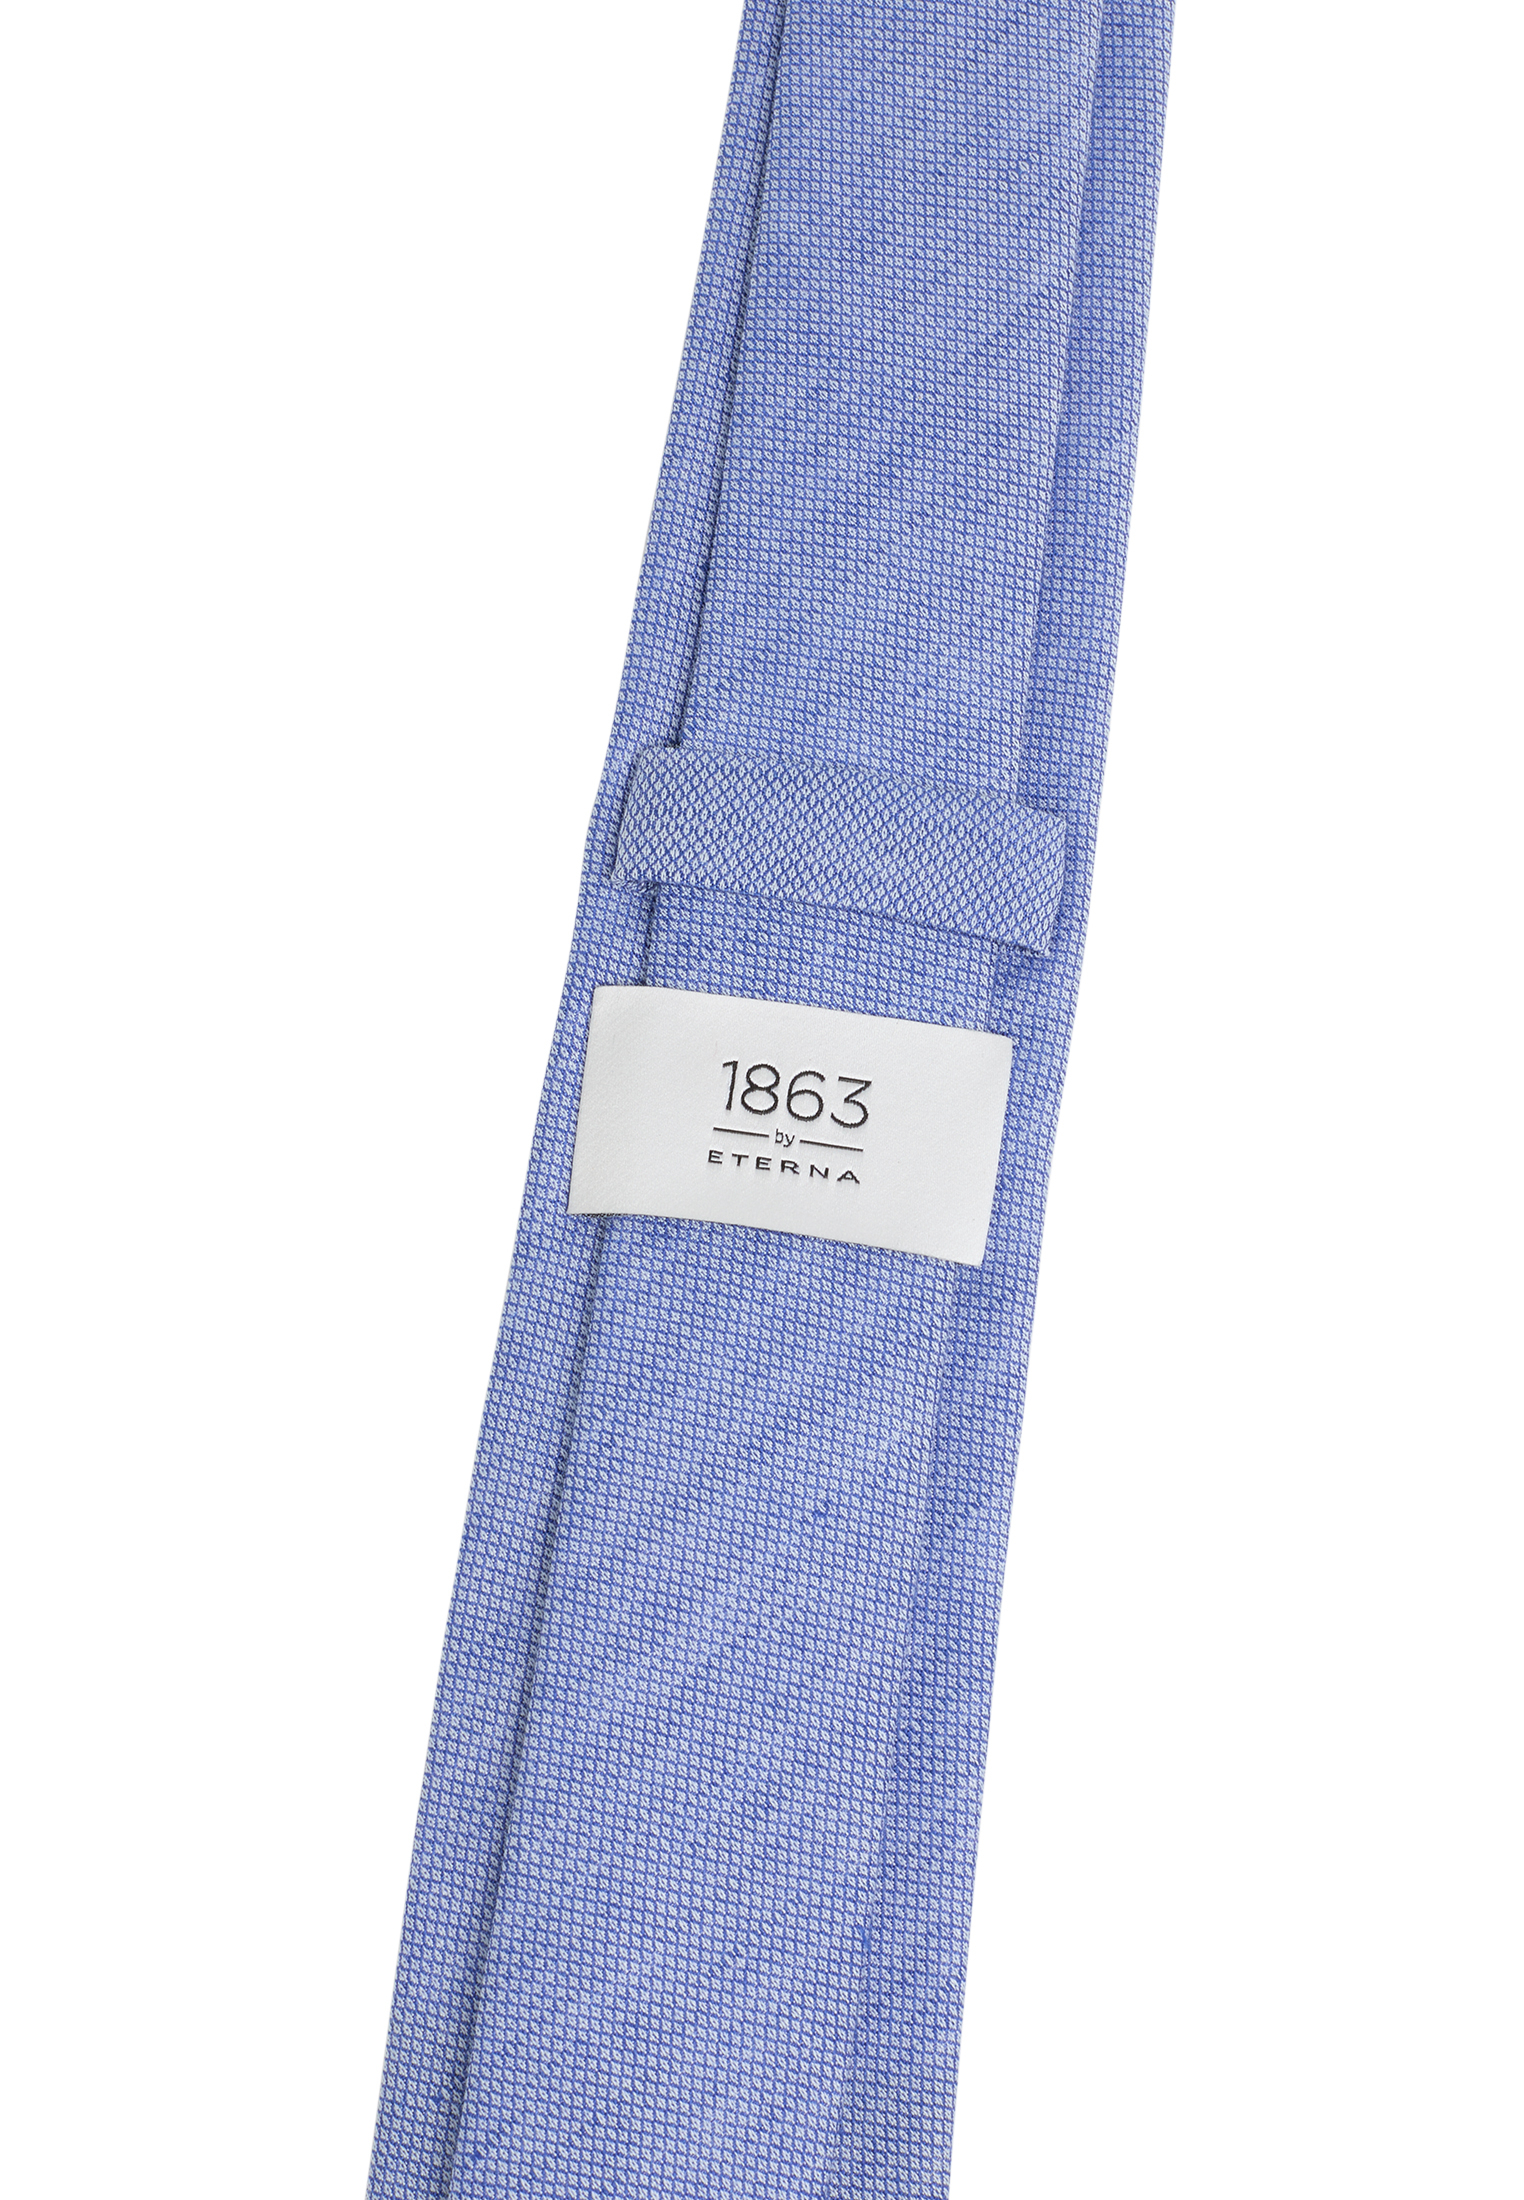 Cravate bleu royal structuré